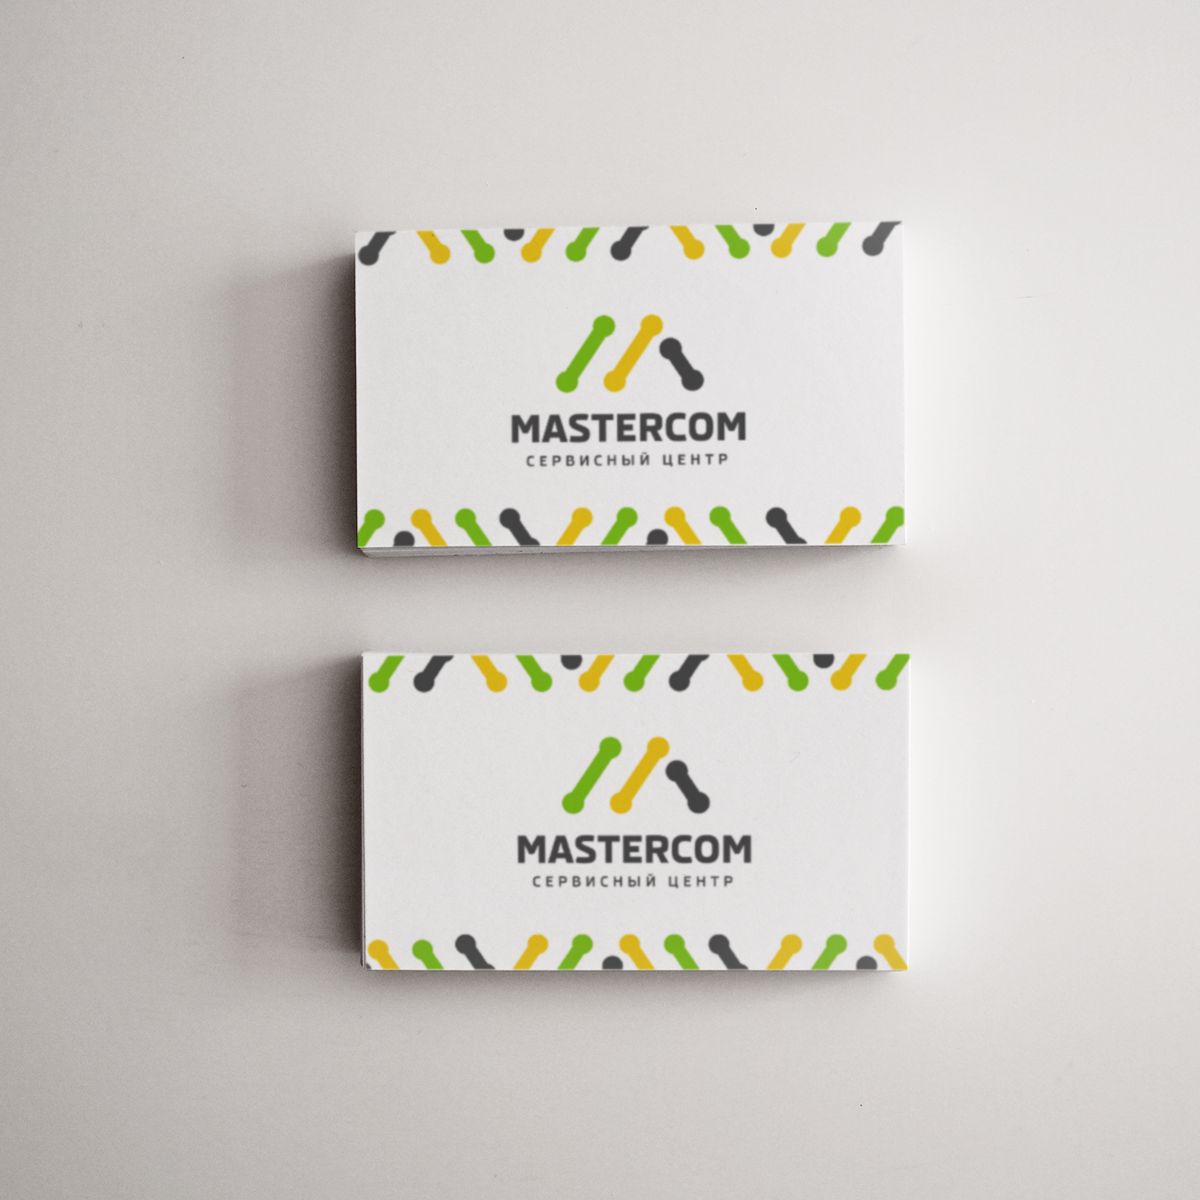 MasterCom (логотип, фирменный стиль) - дизайнер zet333